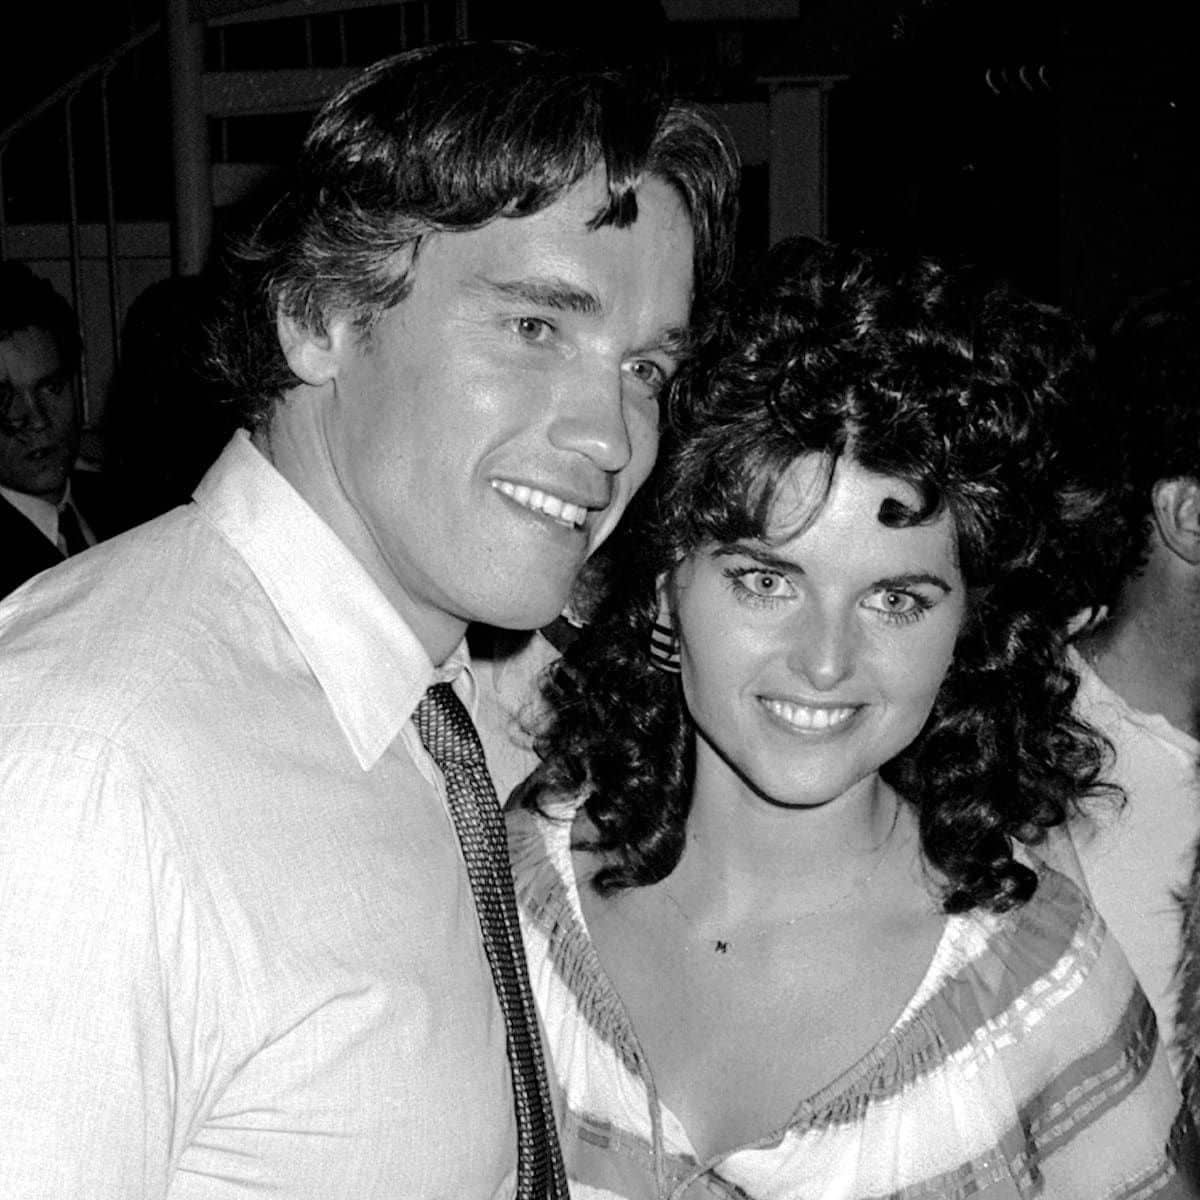 USA-Arnold Schwarzenegger & Maria Shriver 1982